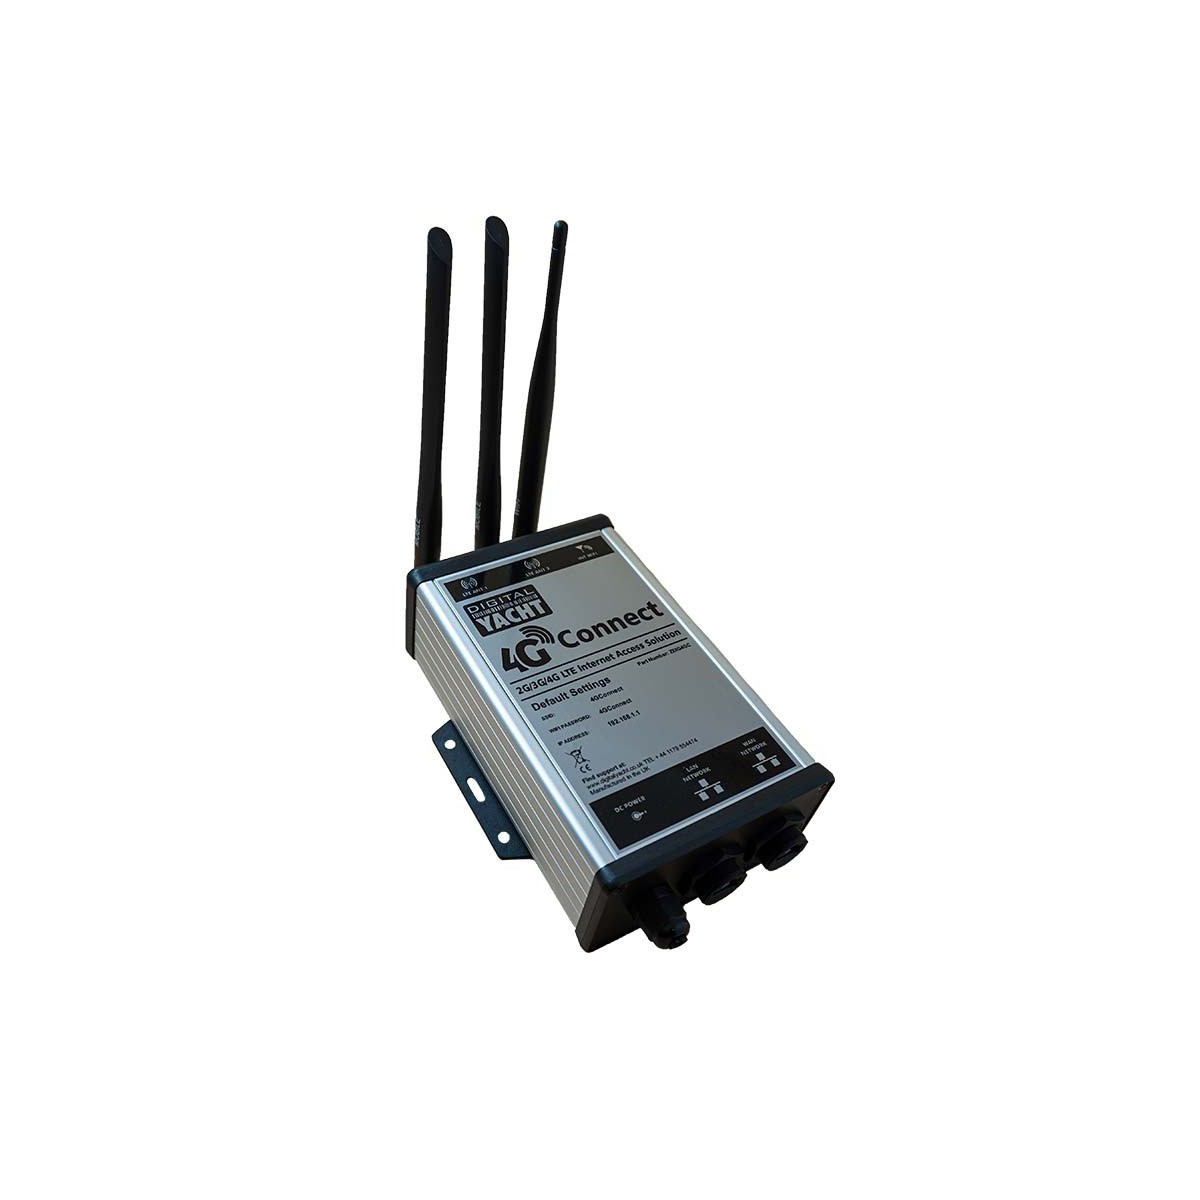 Digital Yacht Routeur 4G Connect 2G/3G/4G/LTE ZDIG4GC - Comptoir Nautique